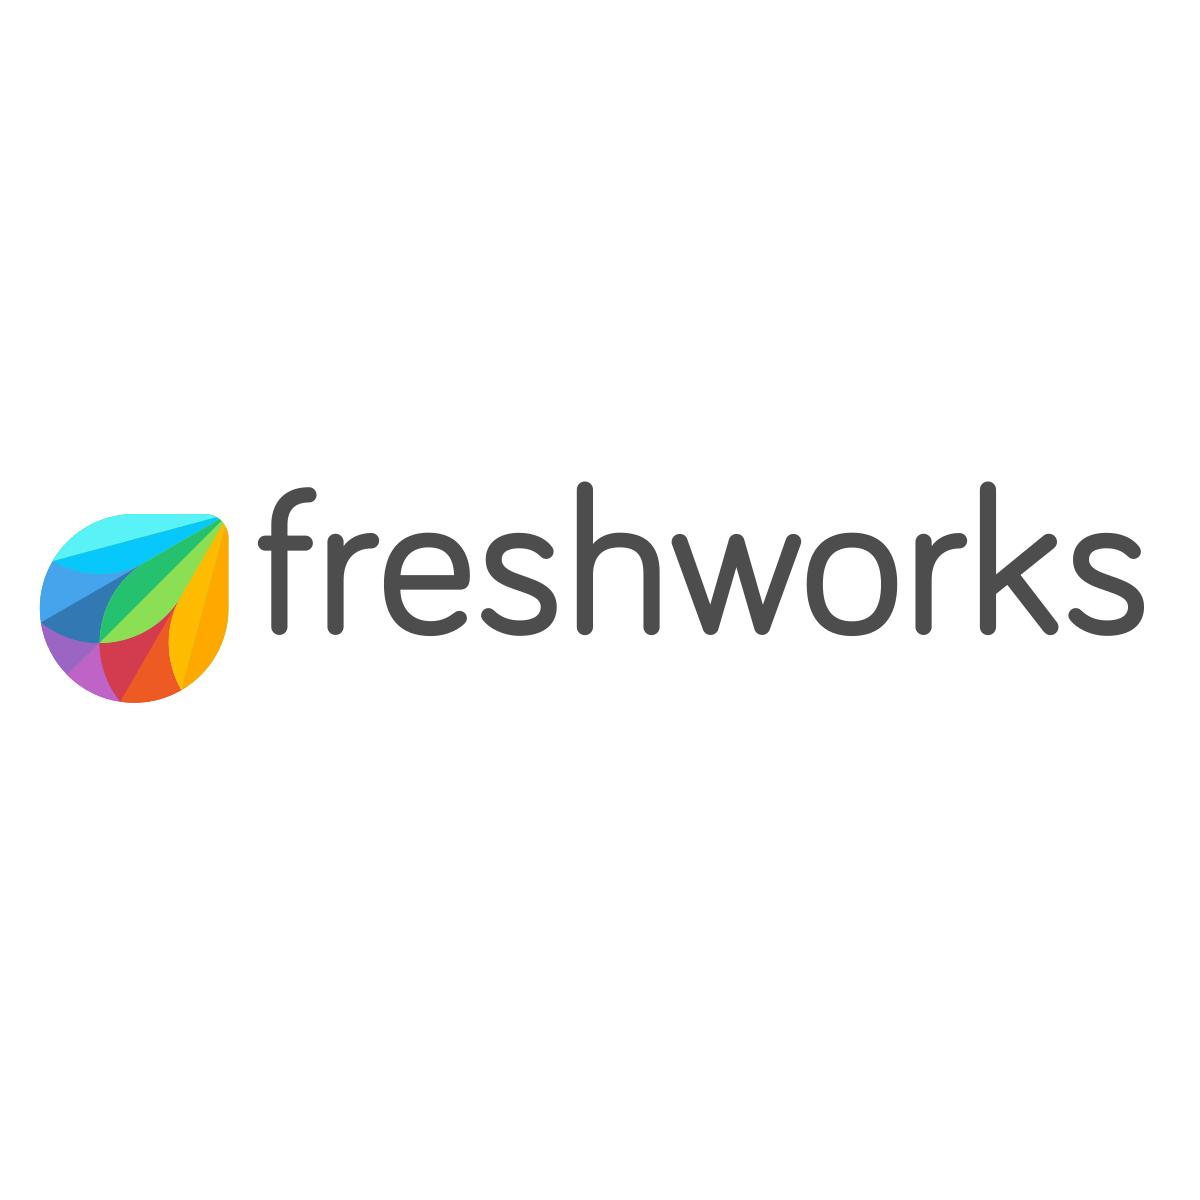 Freshworks_logo